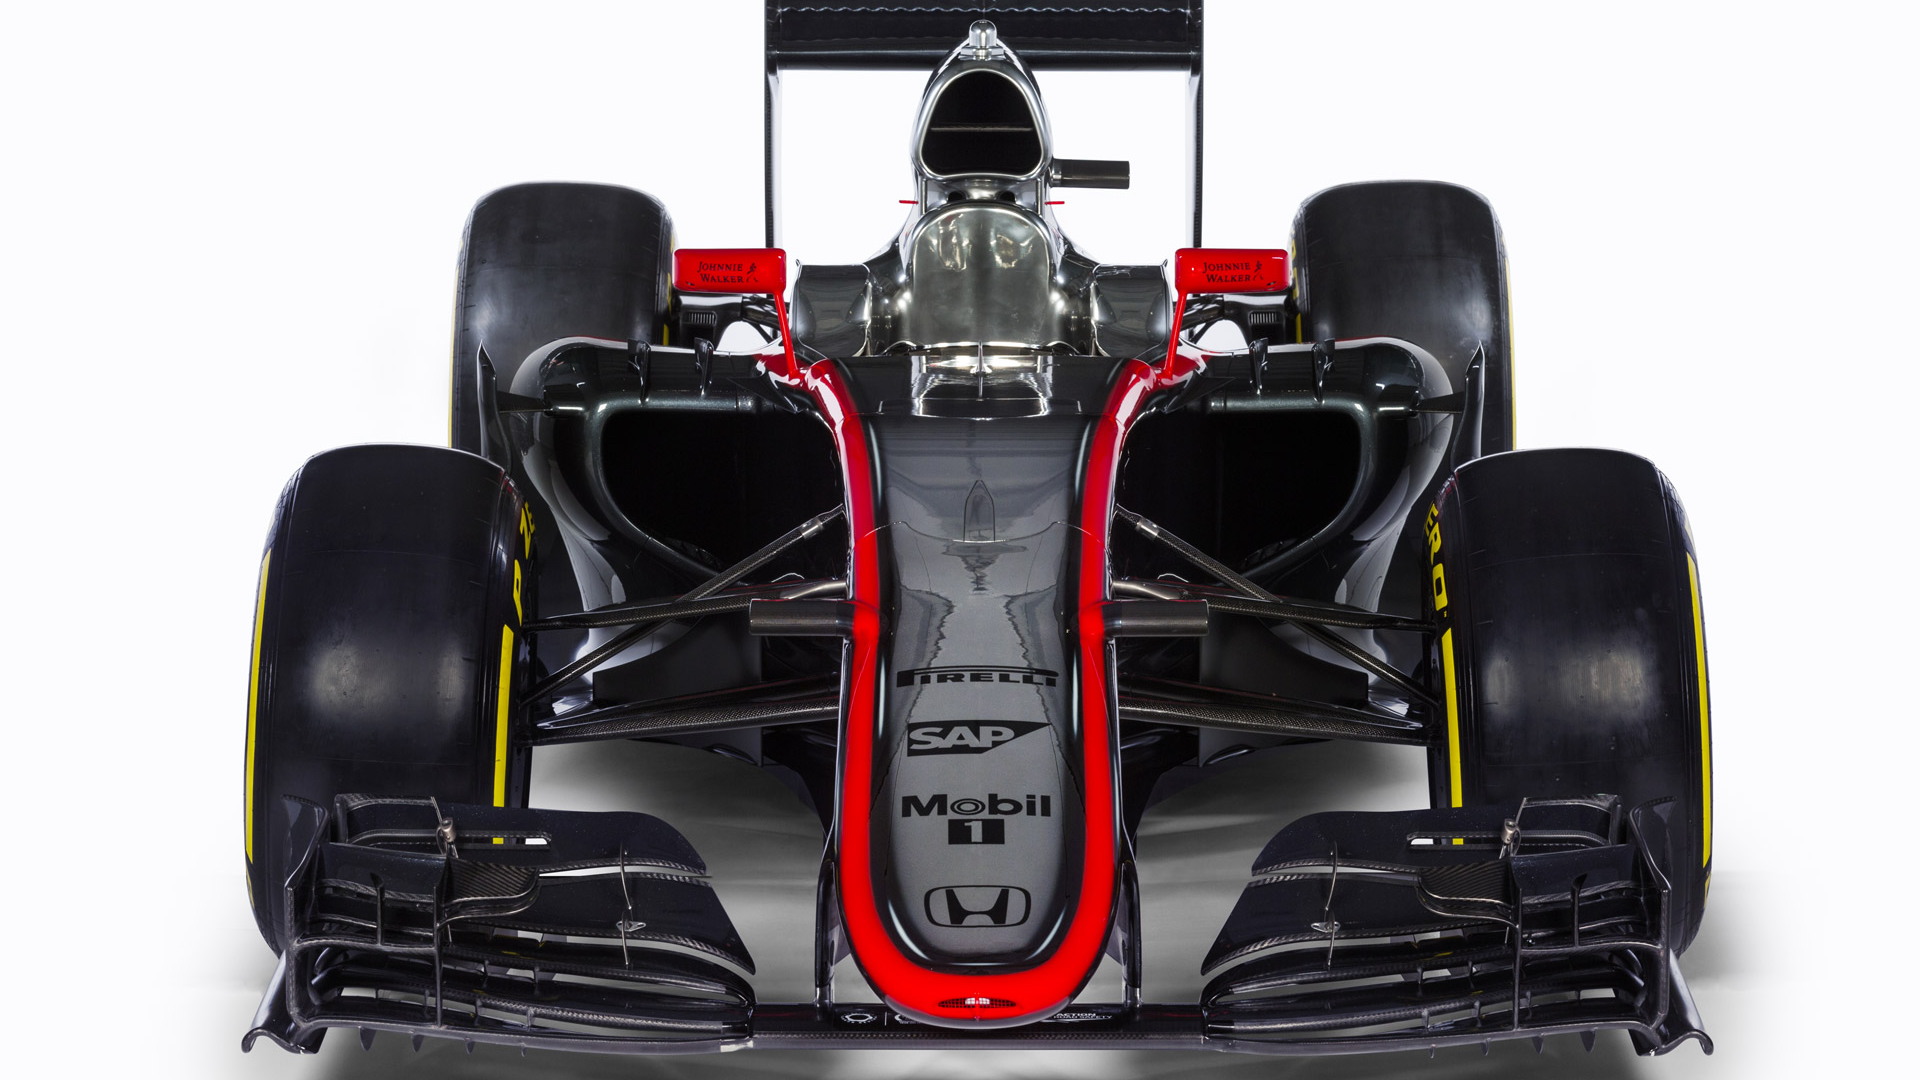 McLaren MP4-30 2015 Formula One car